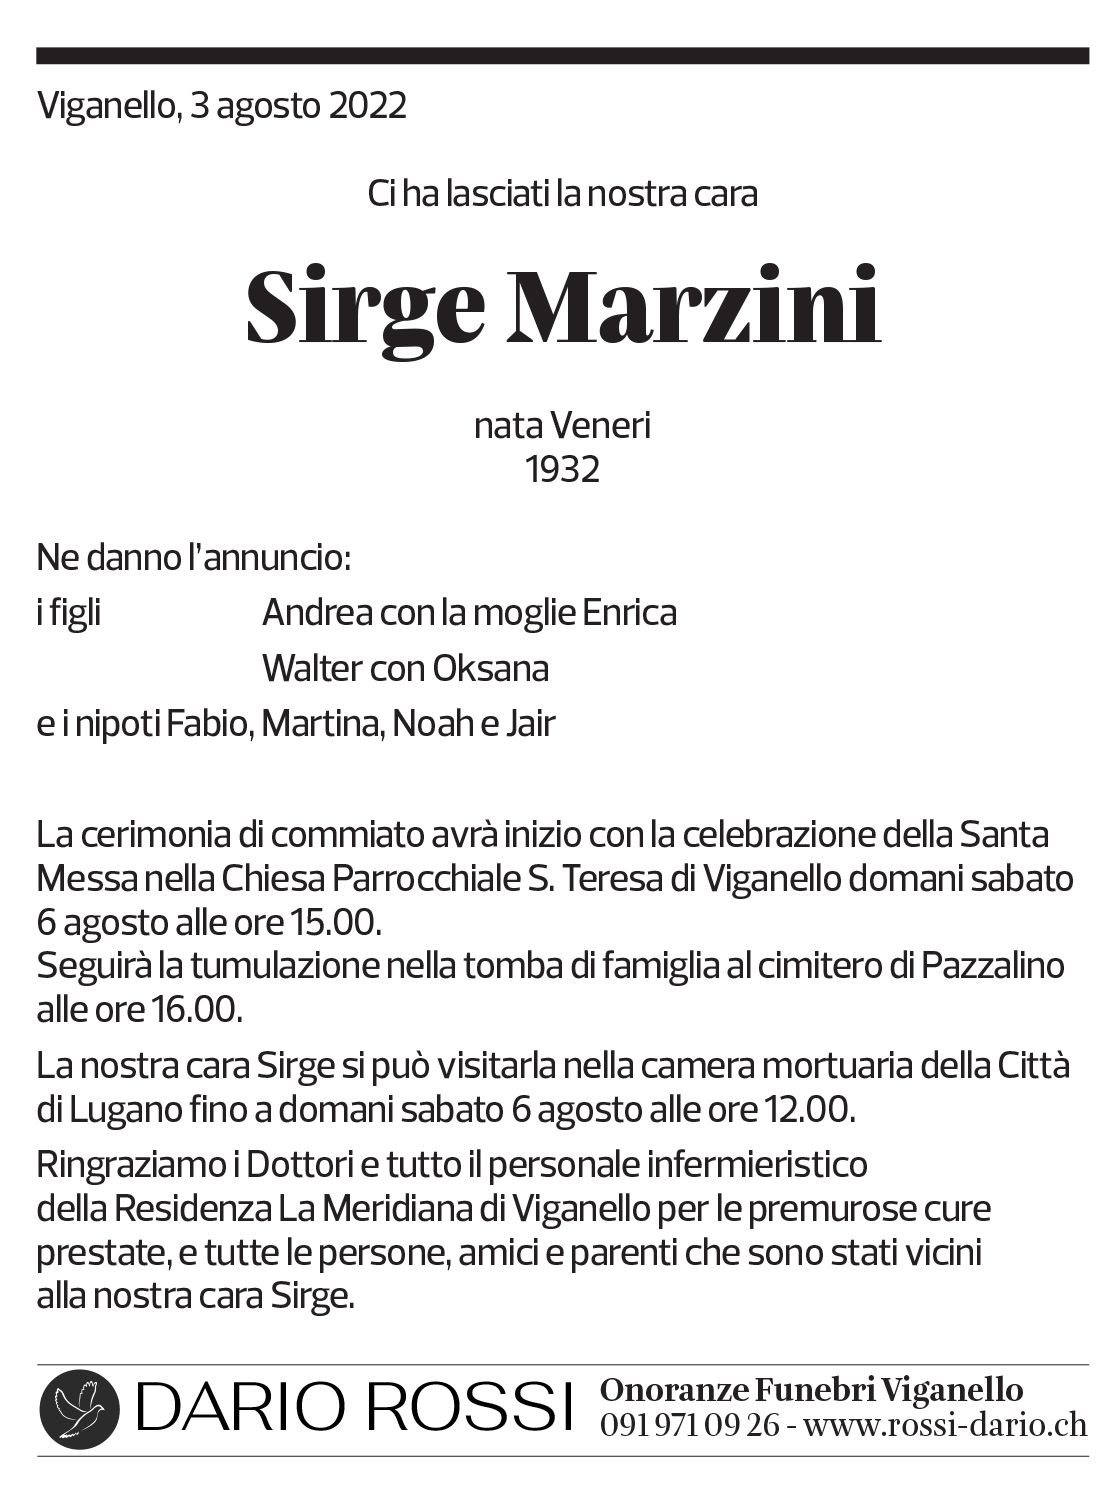 Annuncio funebre Sirge Marzini